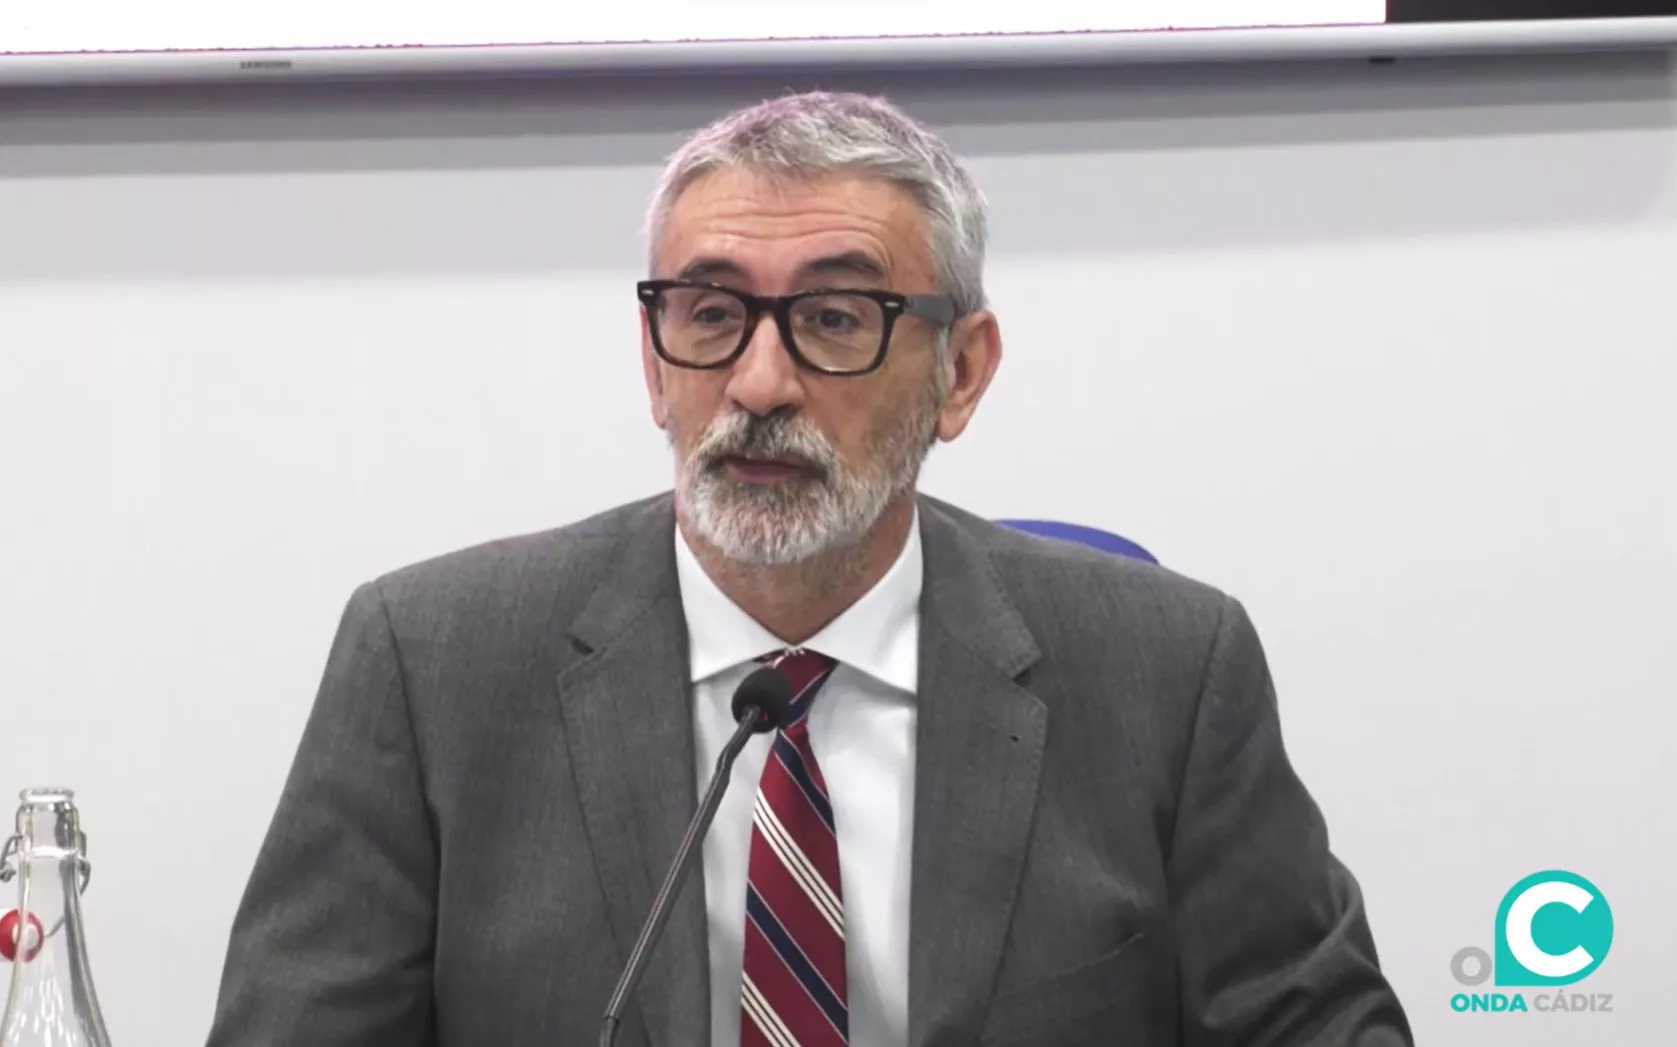 Imagen del rector de la UCA, Francisco Piniella, en una comparecencia pública reciente